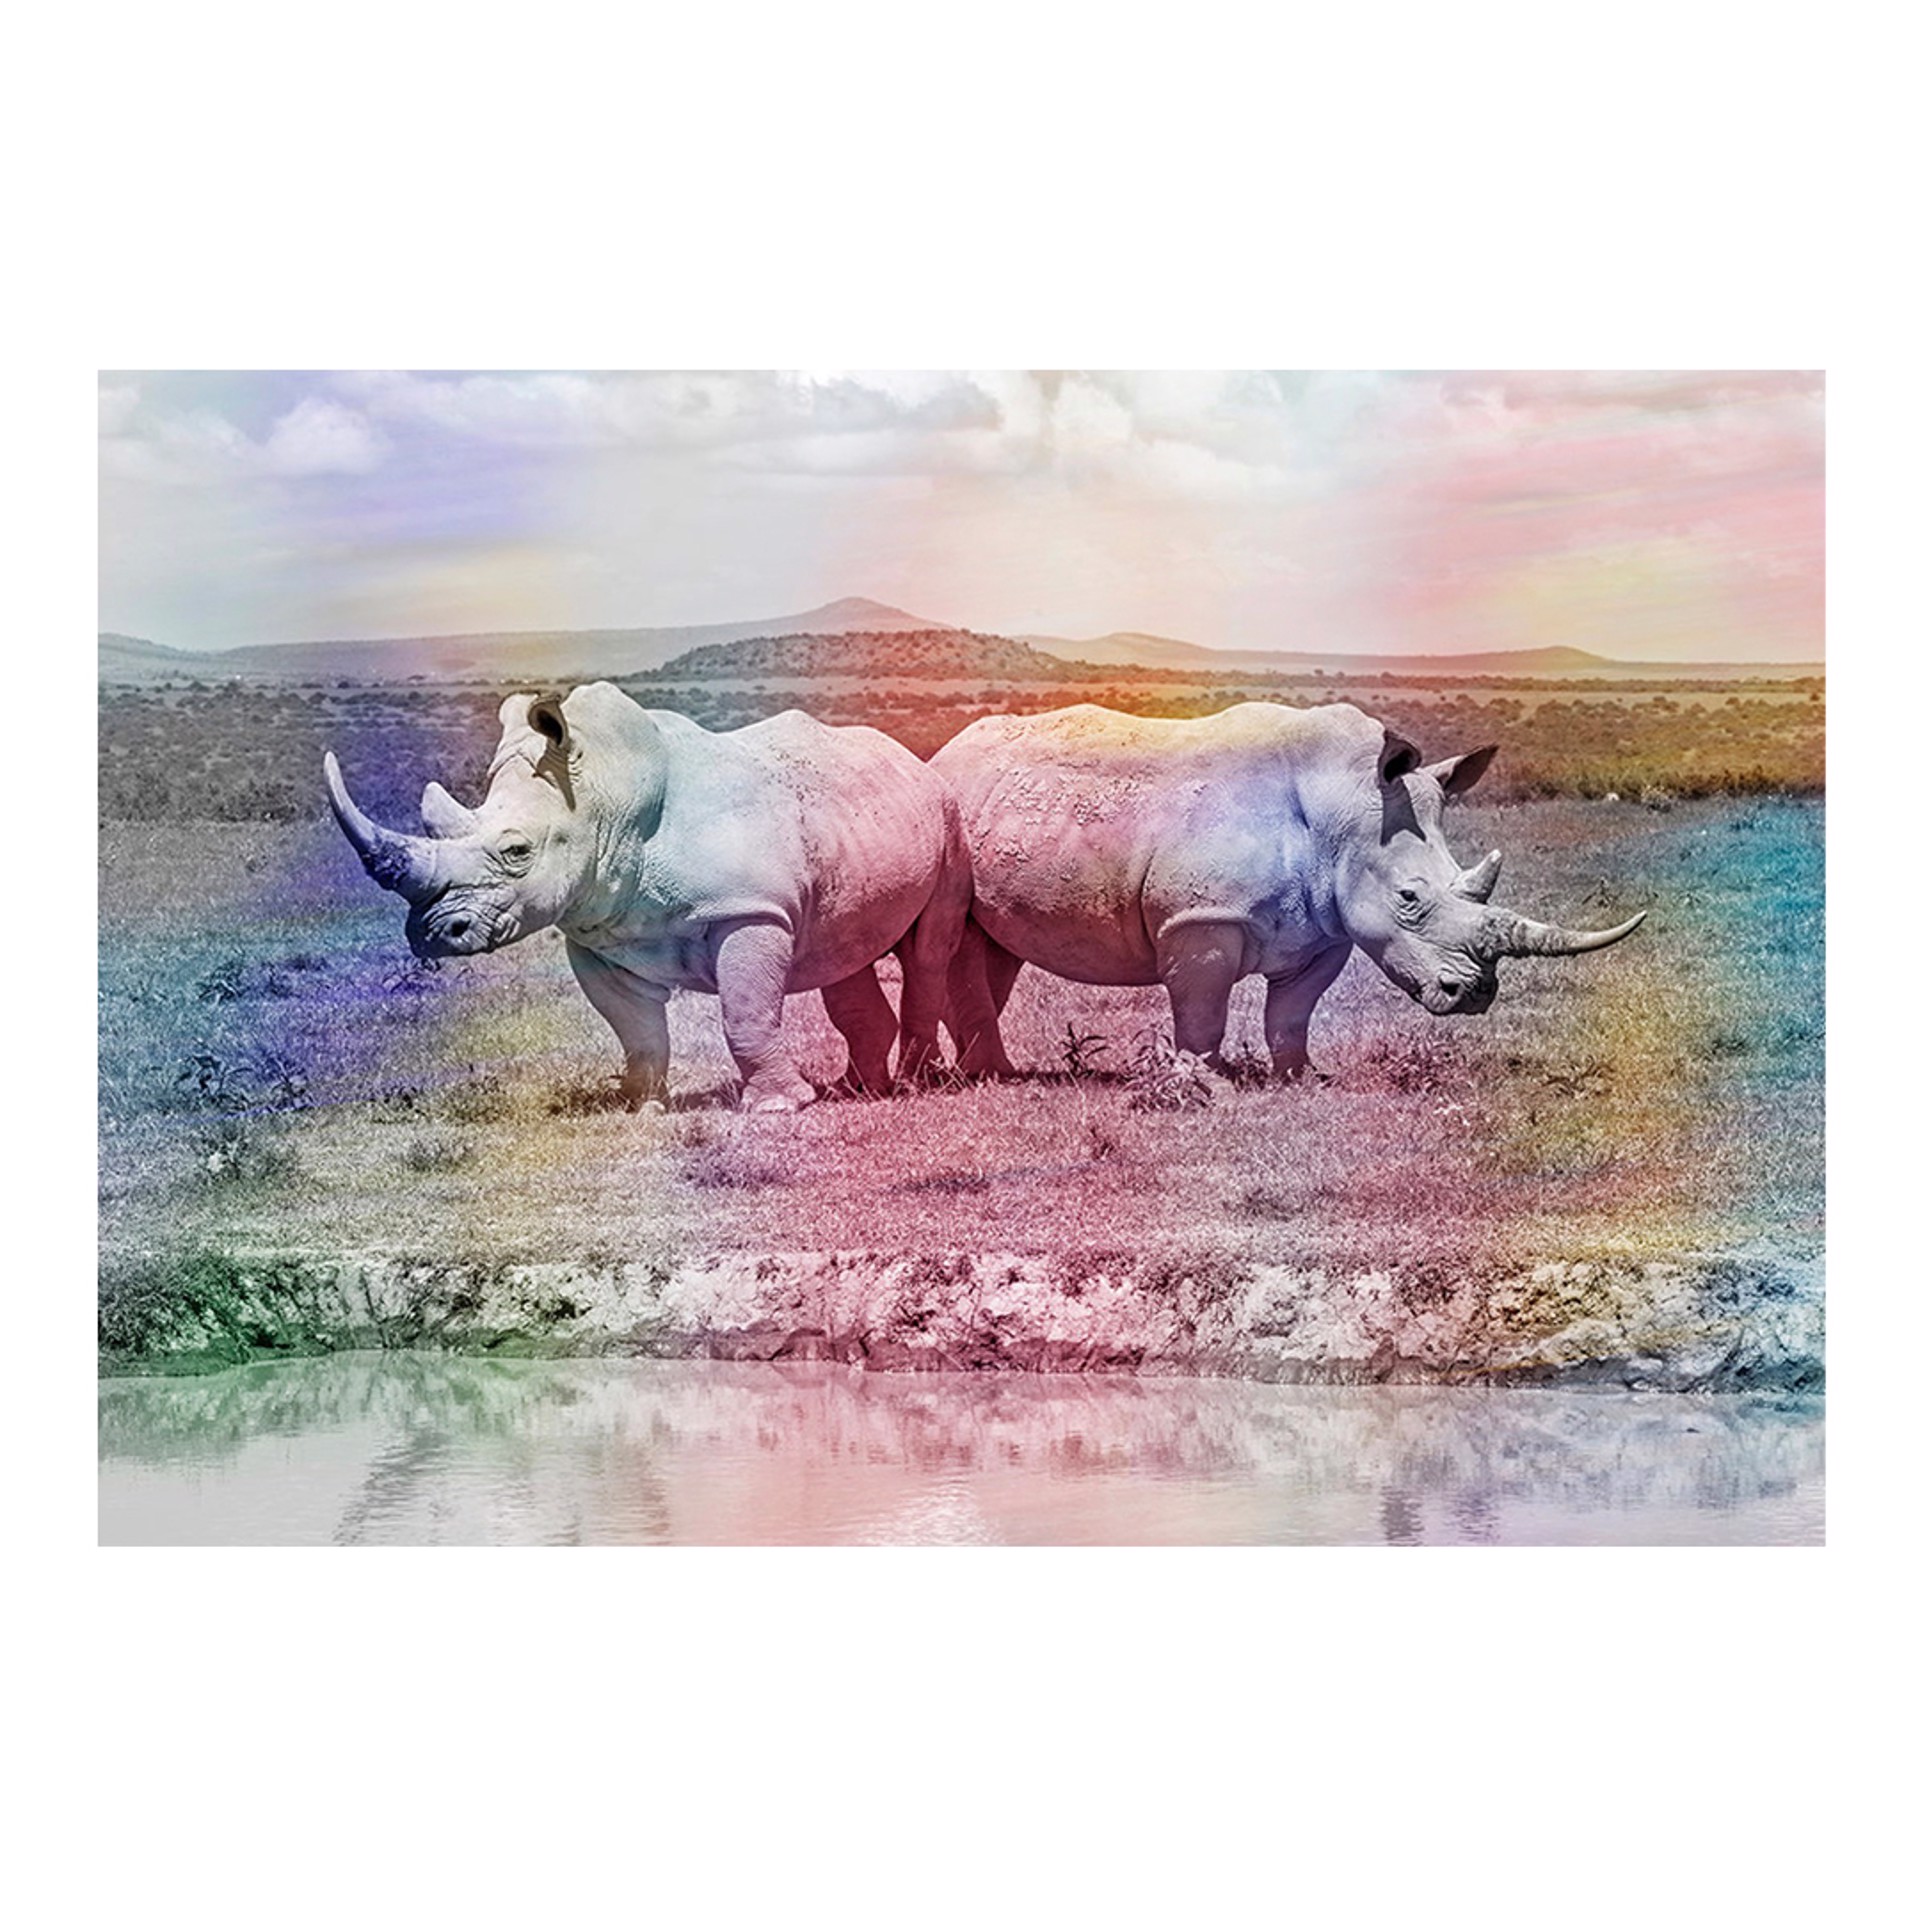 Rhino rainbow #1 by Arno Elias